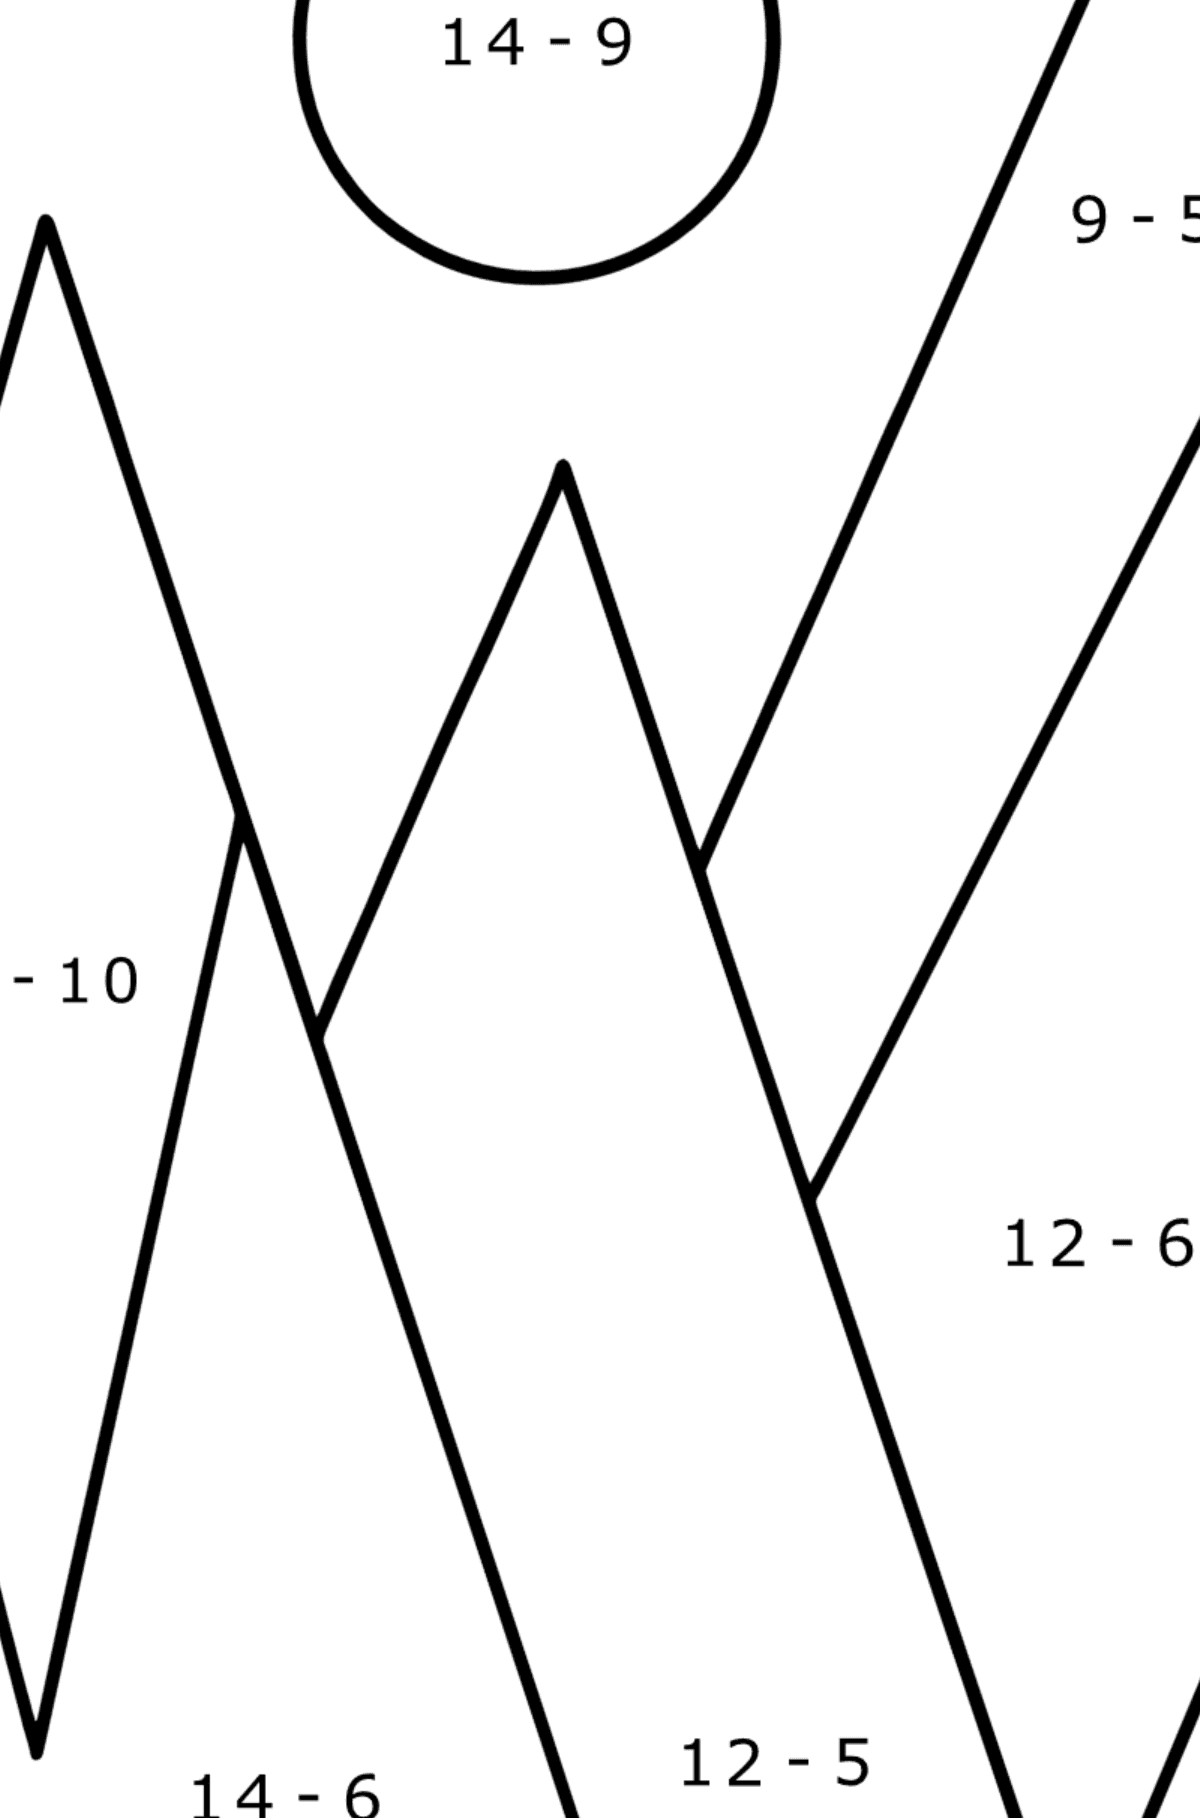 Omalovánka geometrické tvary - hory - Matematická Omalovánka - Odčítání pro děti